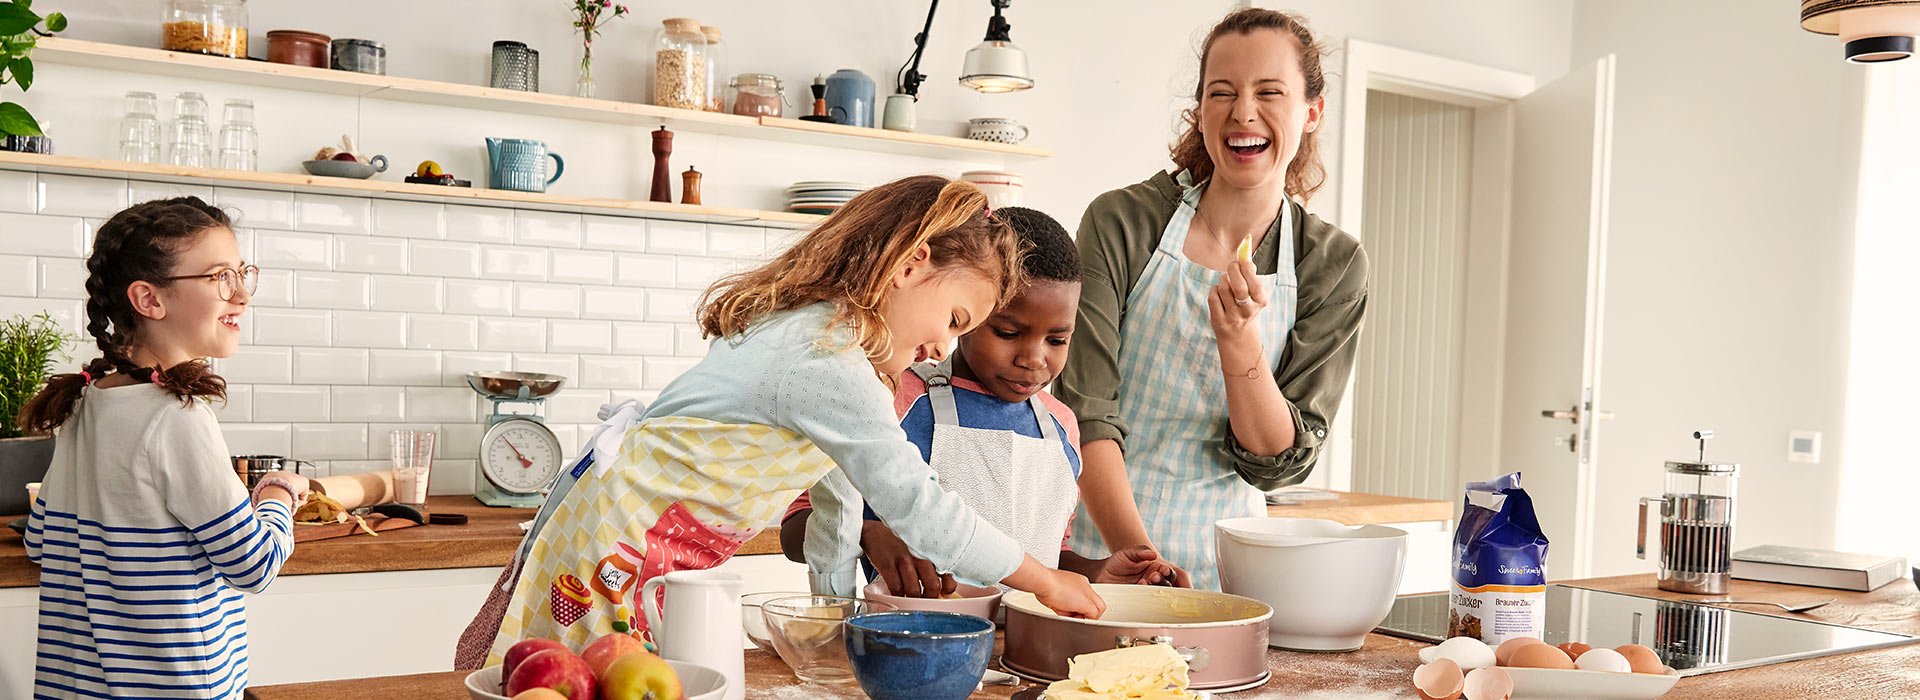 Eine Frau backt mit drei Kinden einen Kuchen. Sie freuen sich. Sie verwenden Produkte von SweetFamily